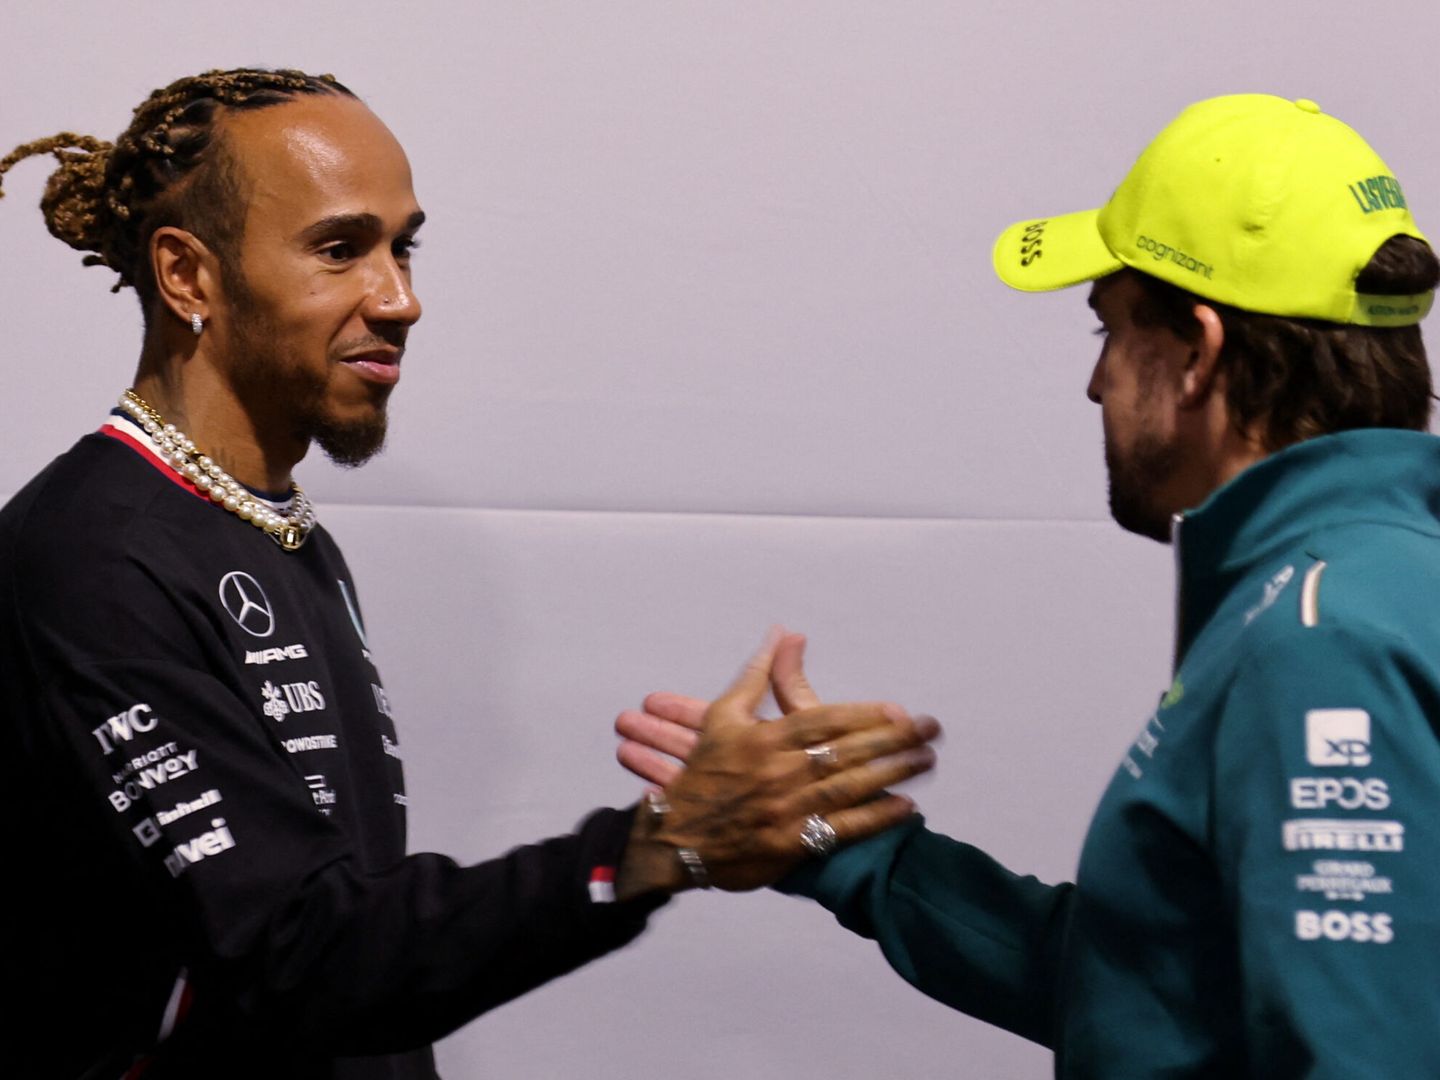 El carisma y la dimensión de Alonso serían idóneos para suplir la figura de Hamilton. (Reuters)